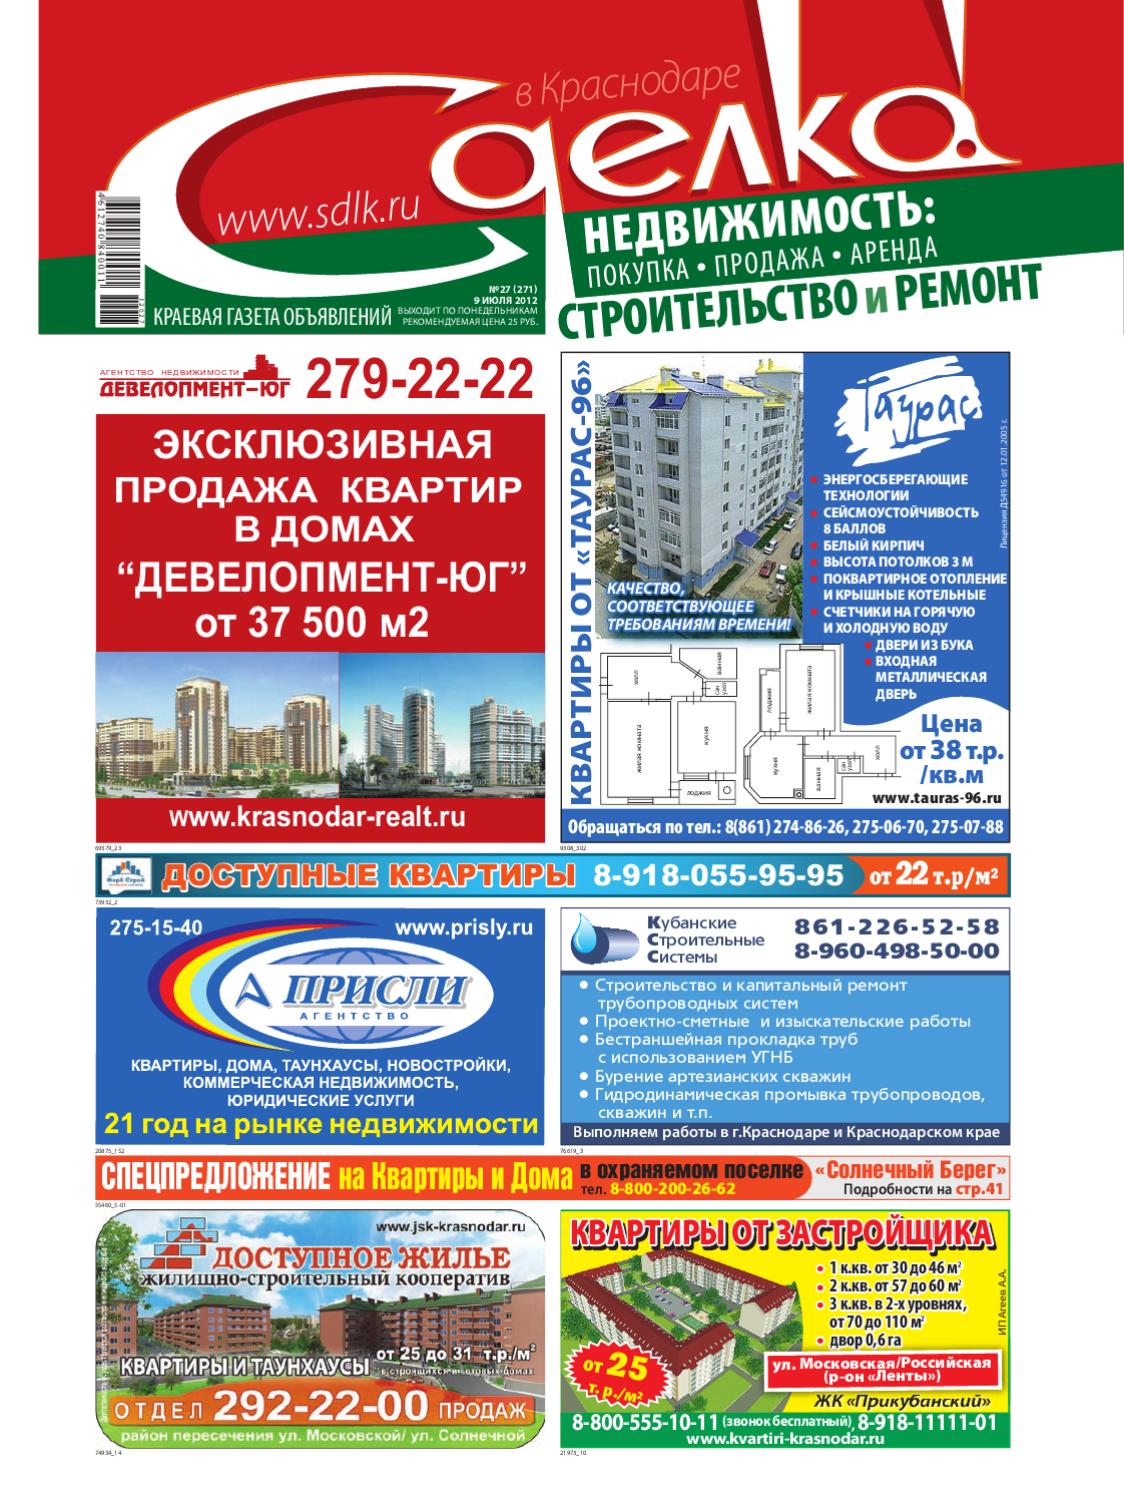 Сделка в Краснодаре № 27, июль 2012